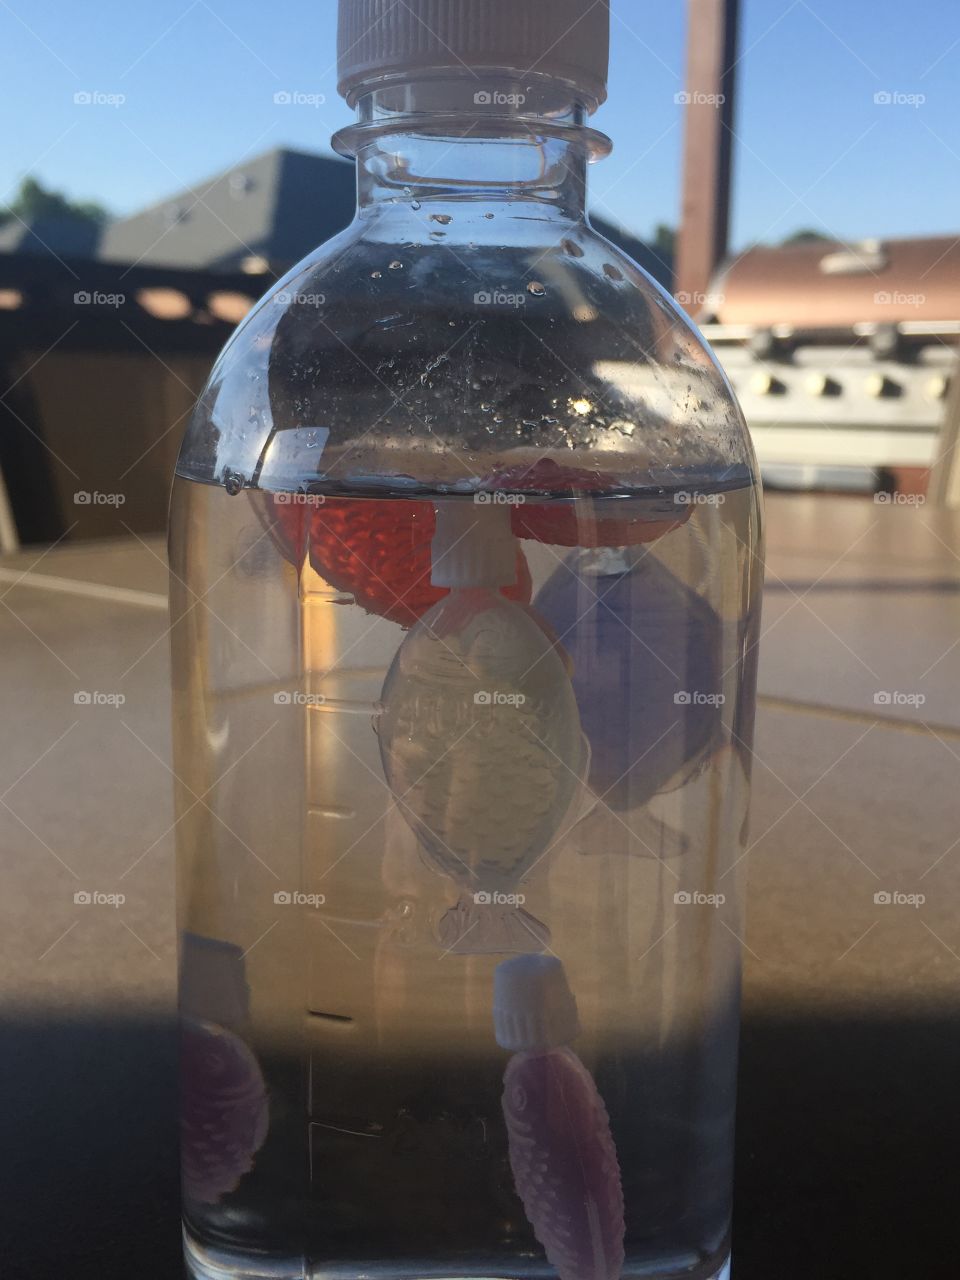 Fish in a bottle